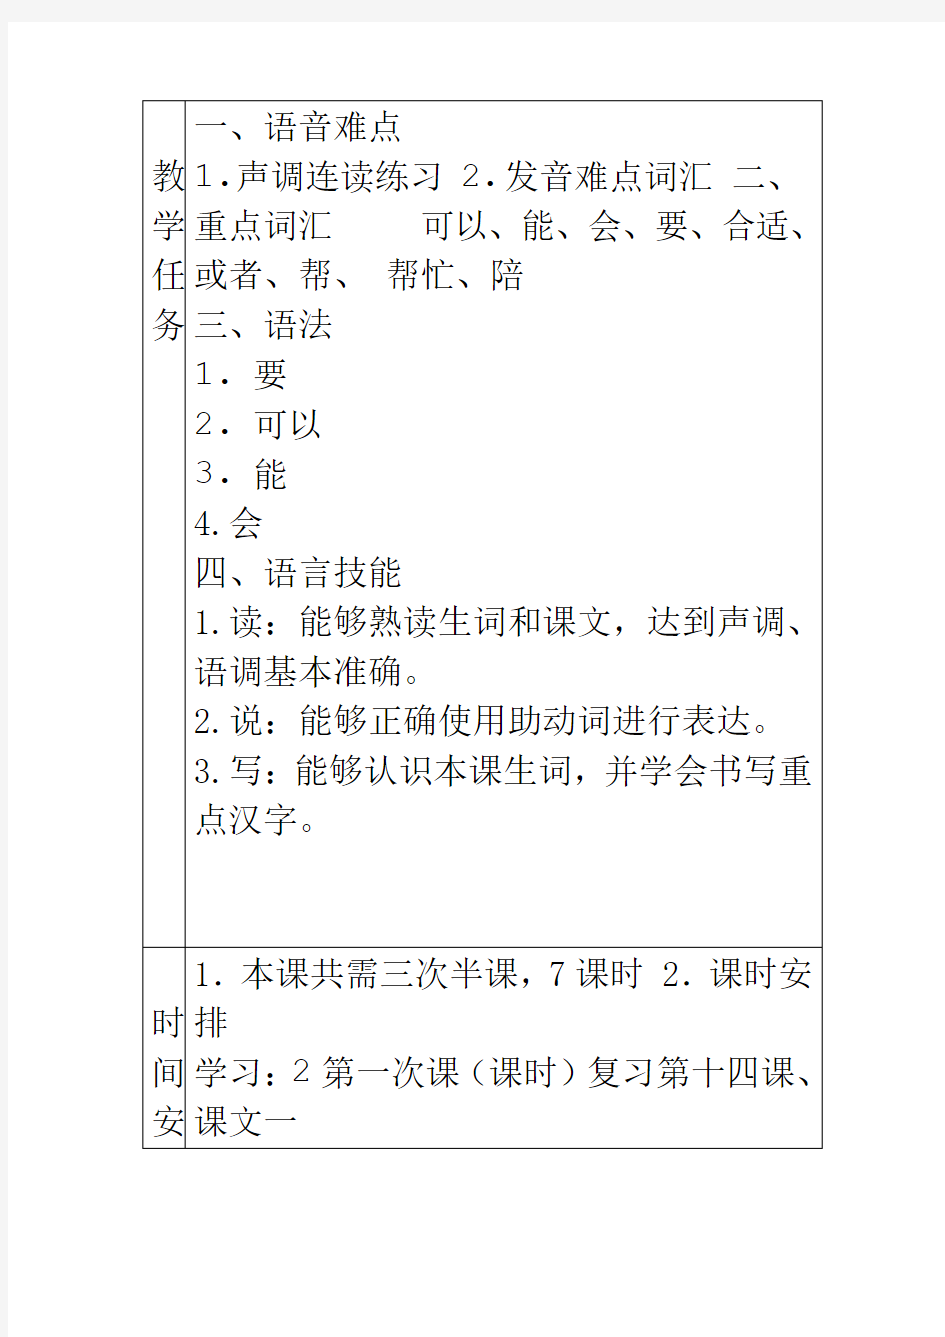 发展汉语初级综合1第15课教案